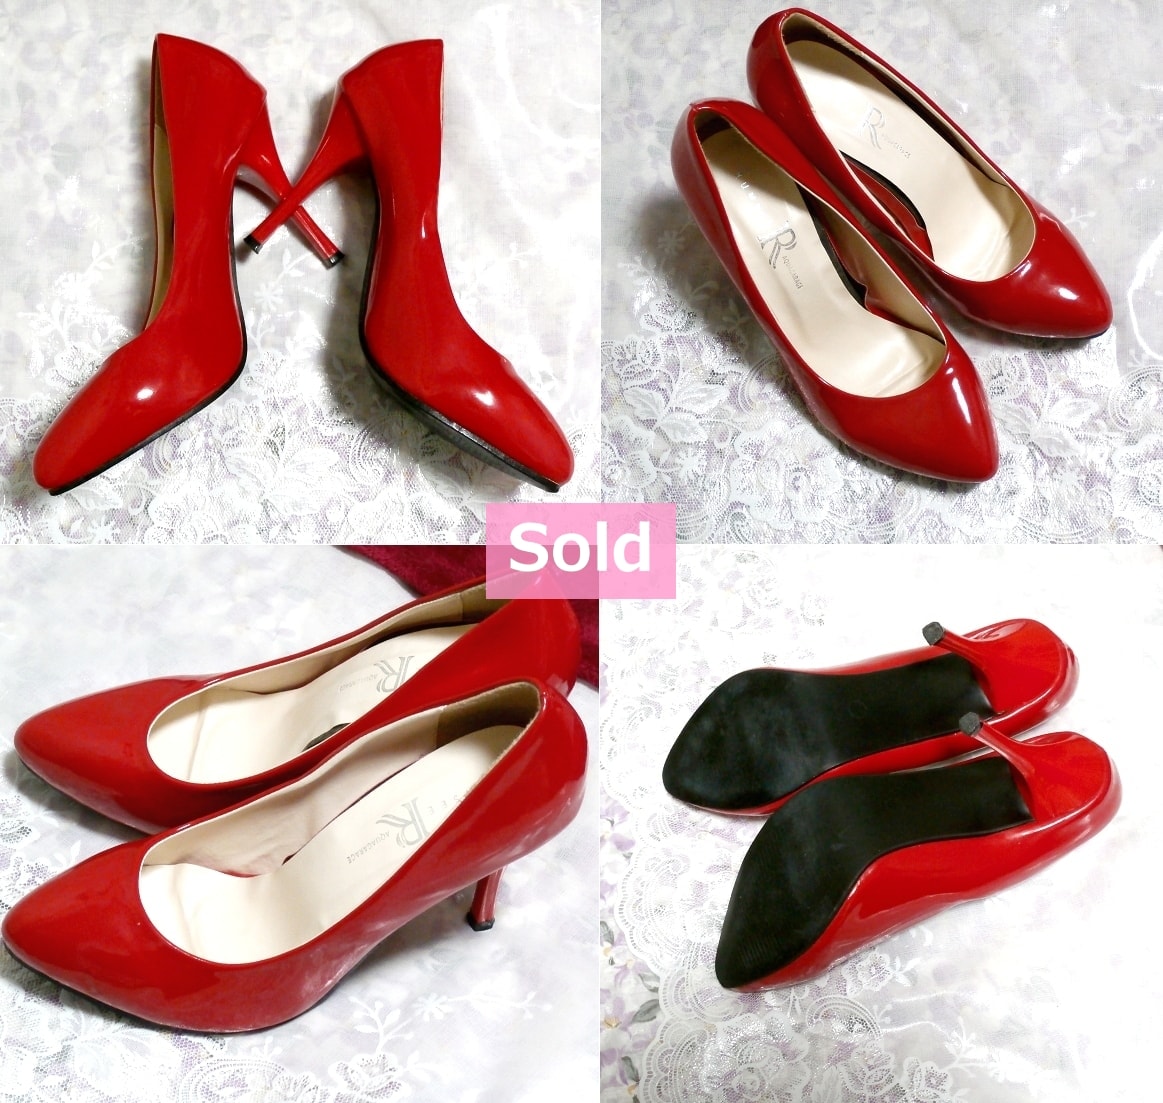 Rojo 3.93 en zapatos de mujer / zapatos de tacón alto Rojo 3.93 en zapatos de mujer / zapatos de tacón alto